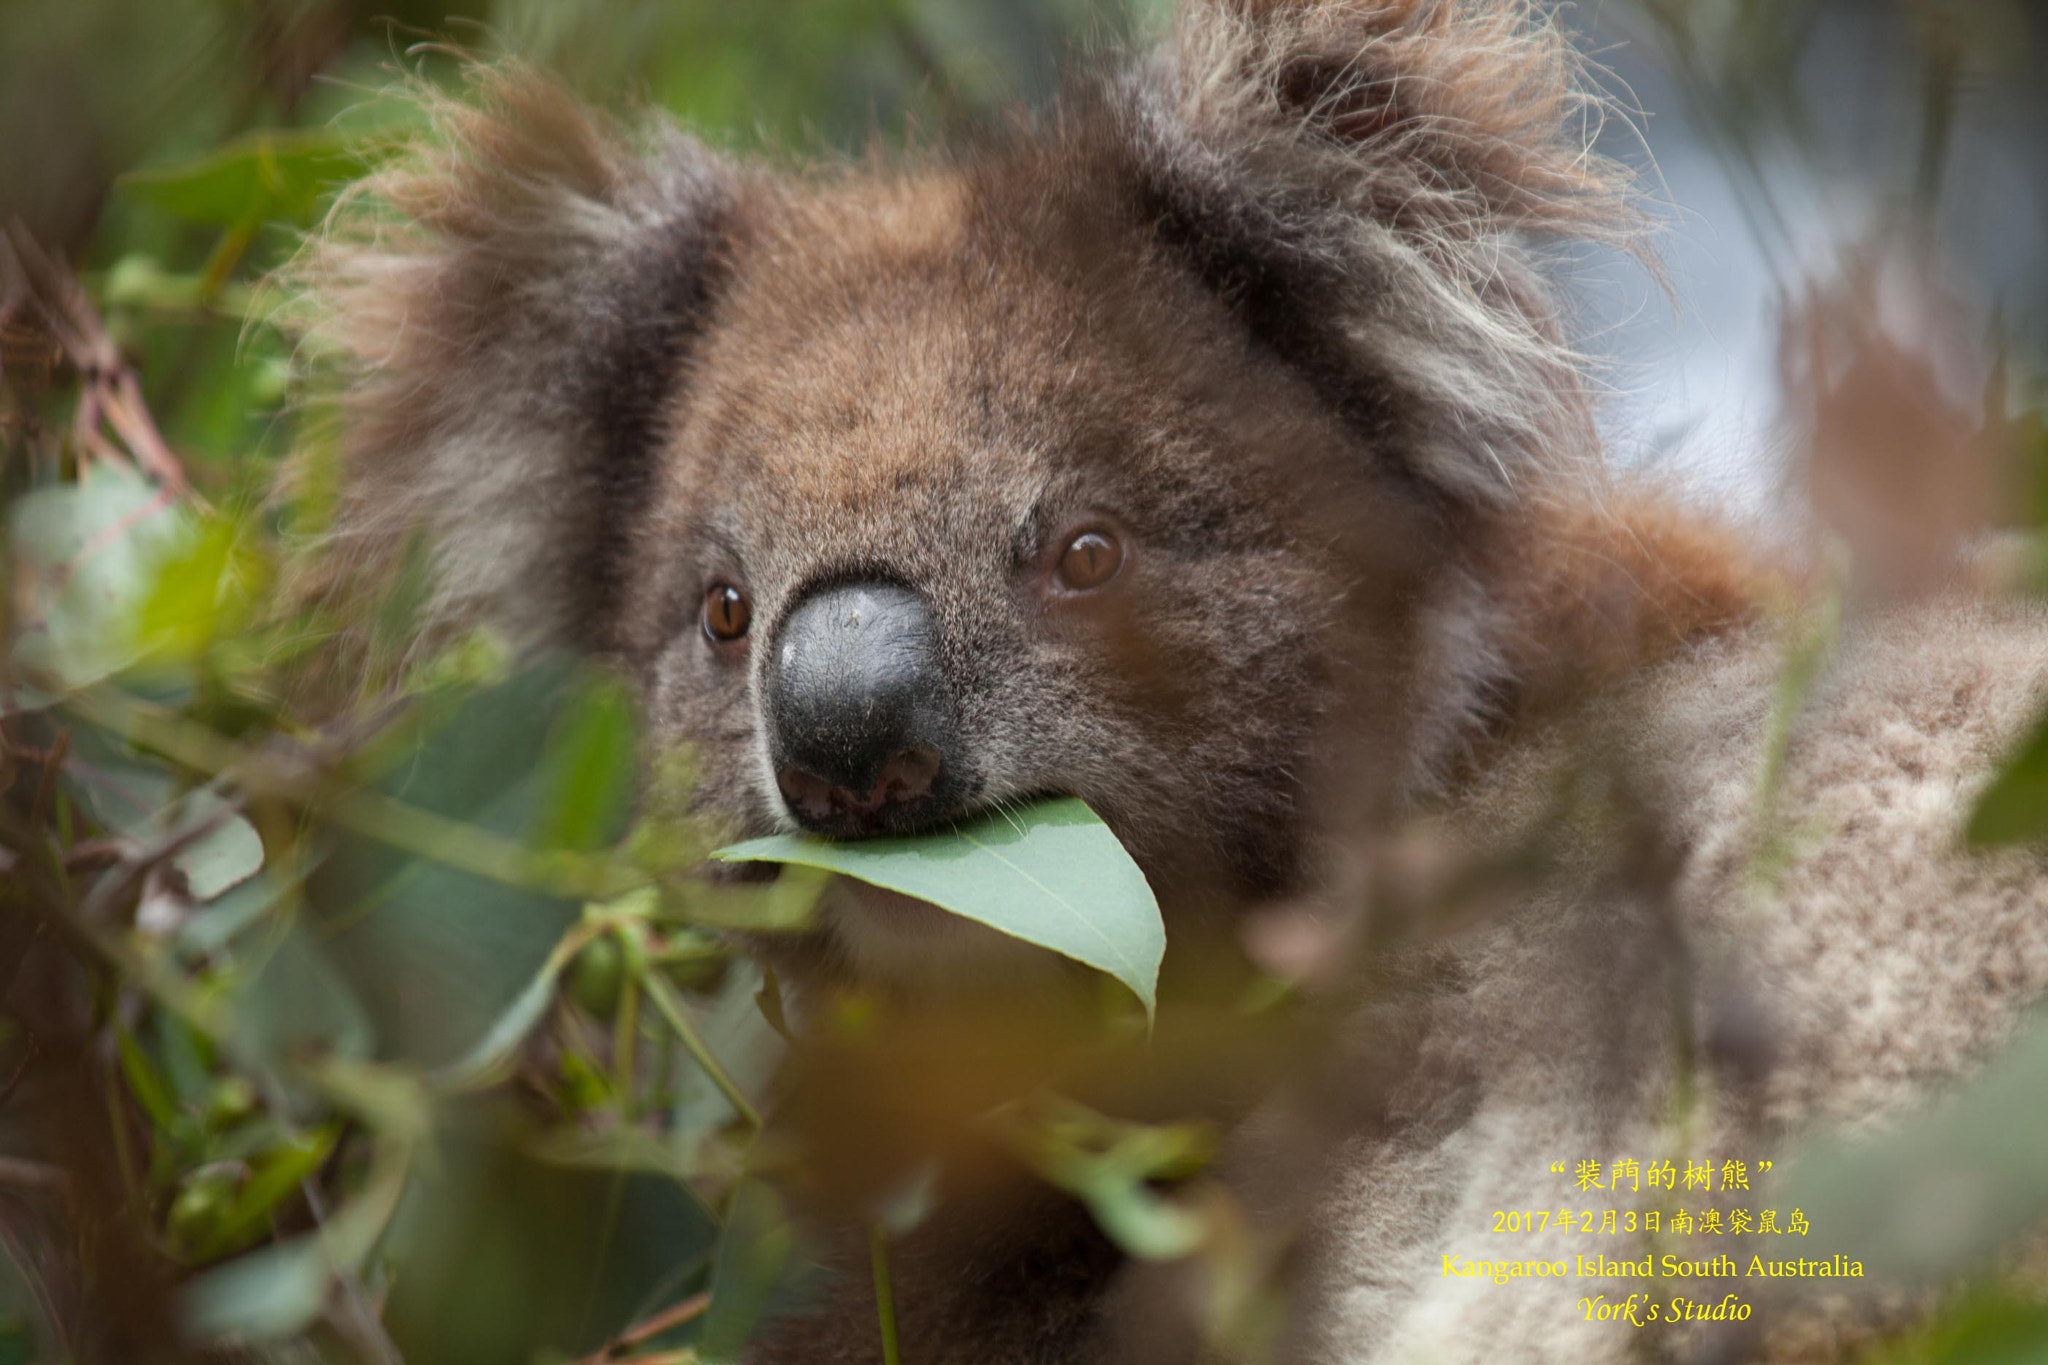 Canon EOS 5D Mark II + Canon EF 70-200mm F2.8L IS II USM sample photo. A cute koala photography